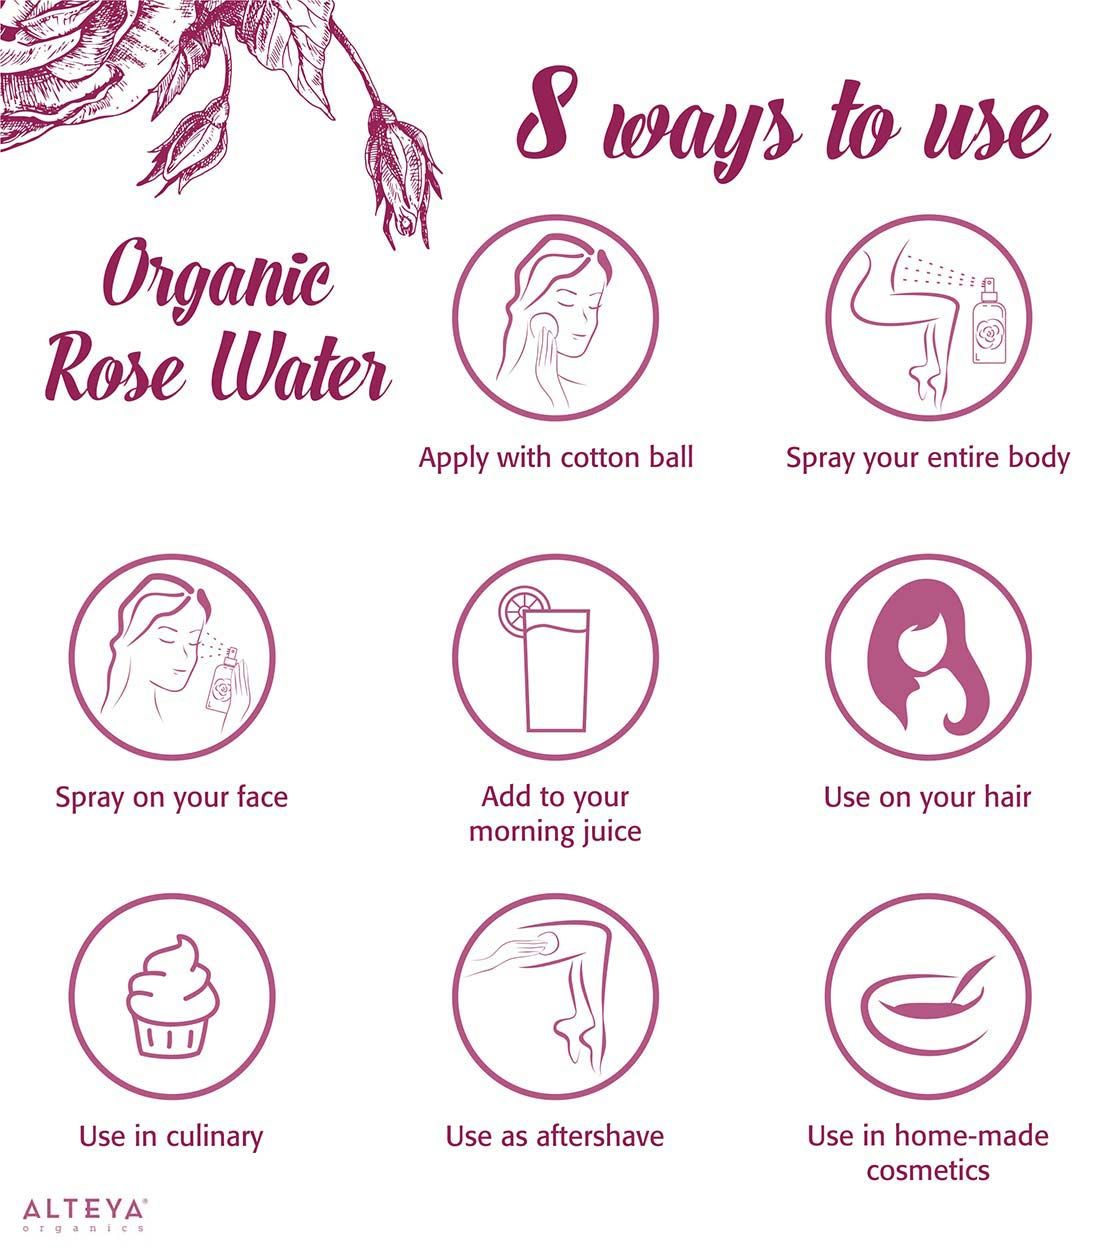 8 ways to use organic rose water